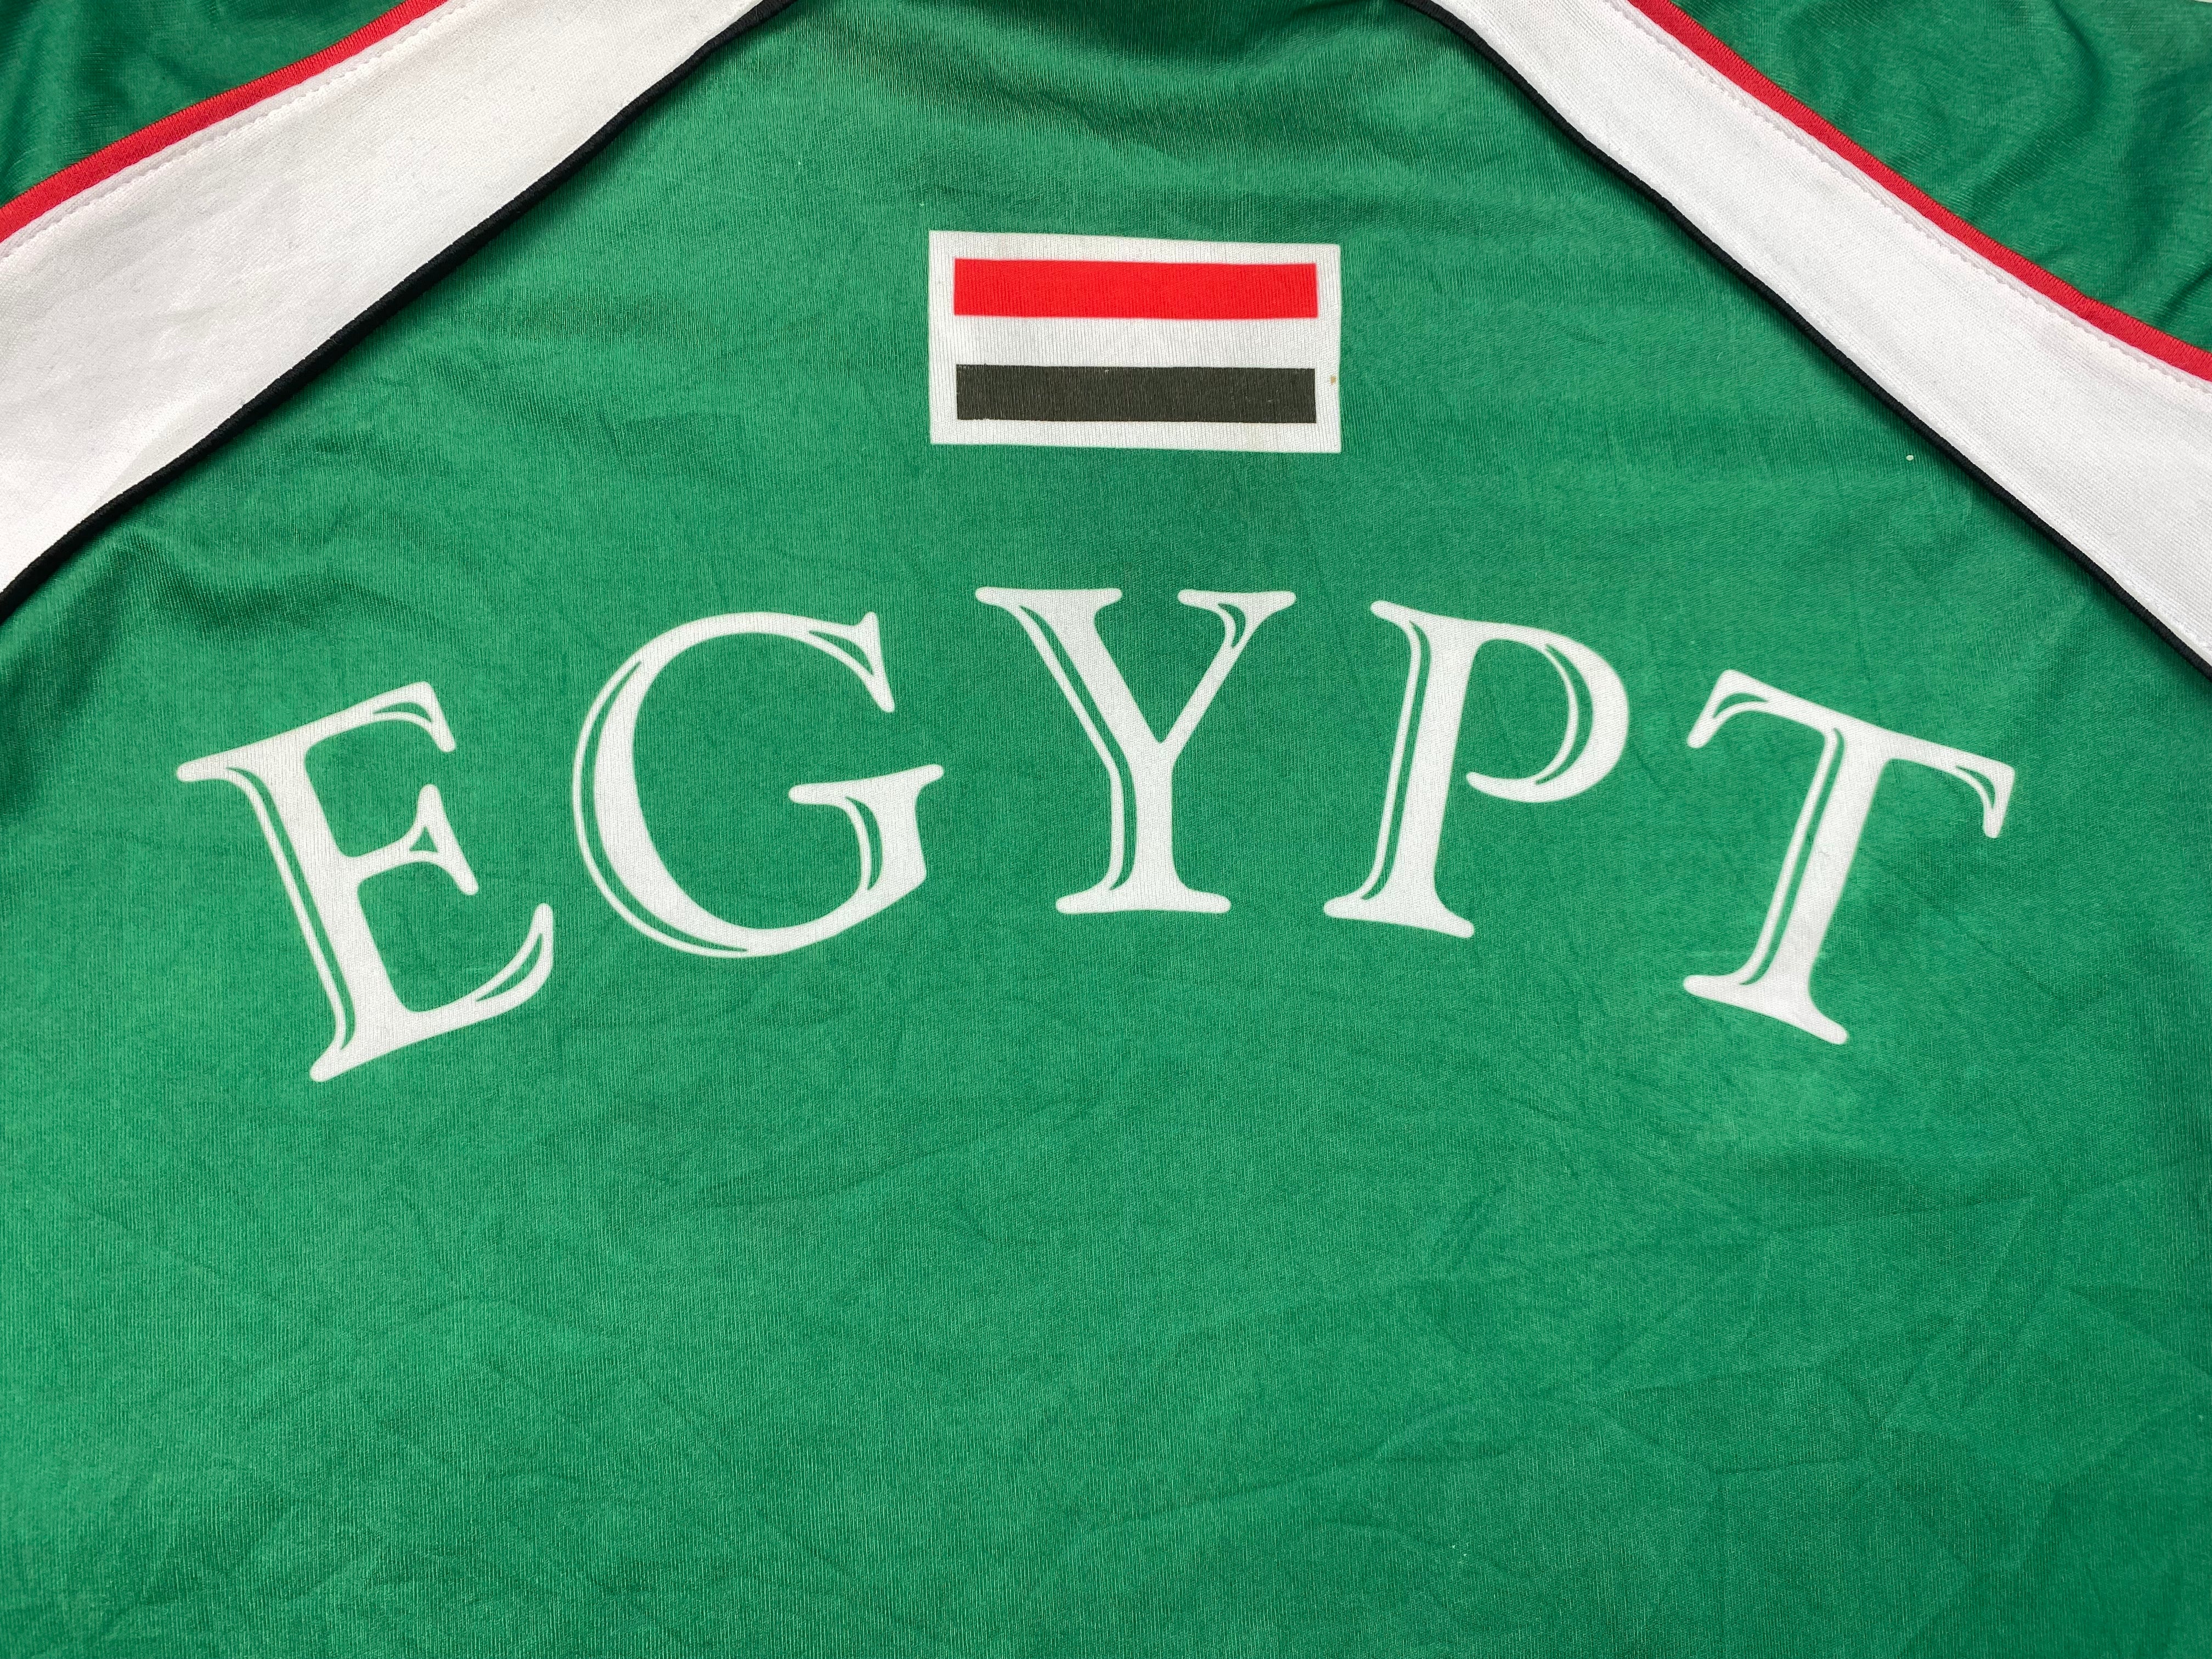 2002/03 Camiseta visitante de Egipto (L) 9/10